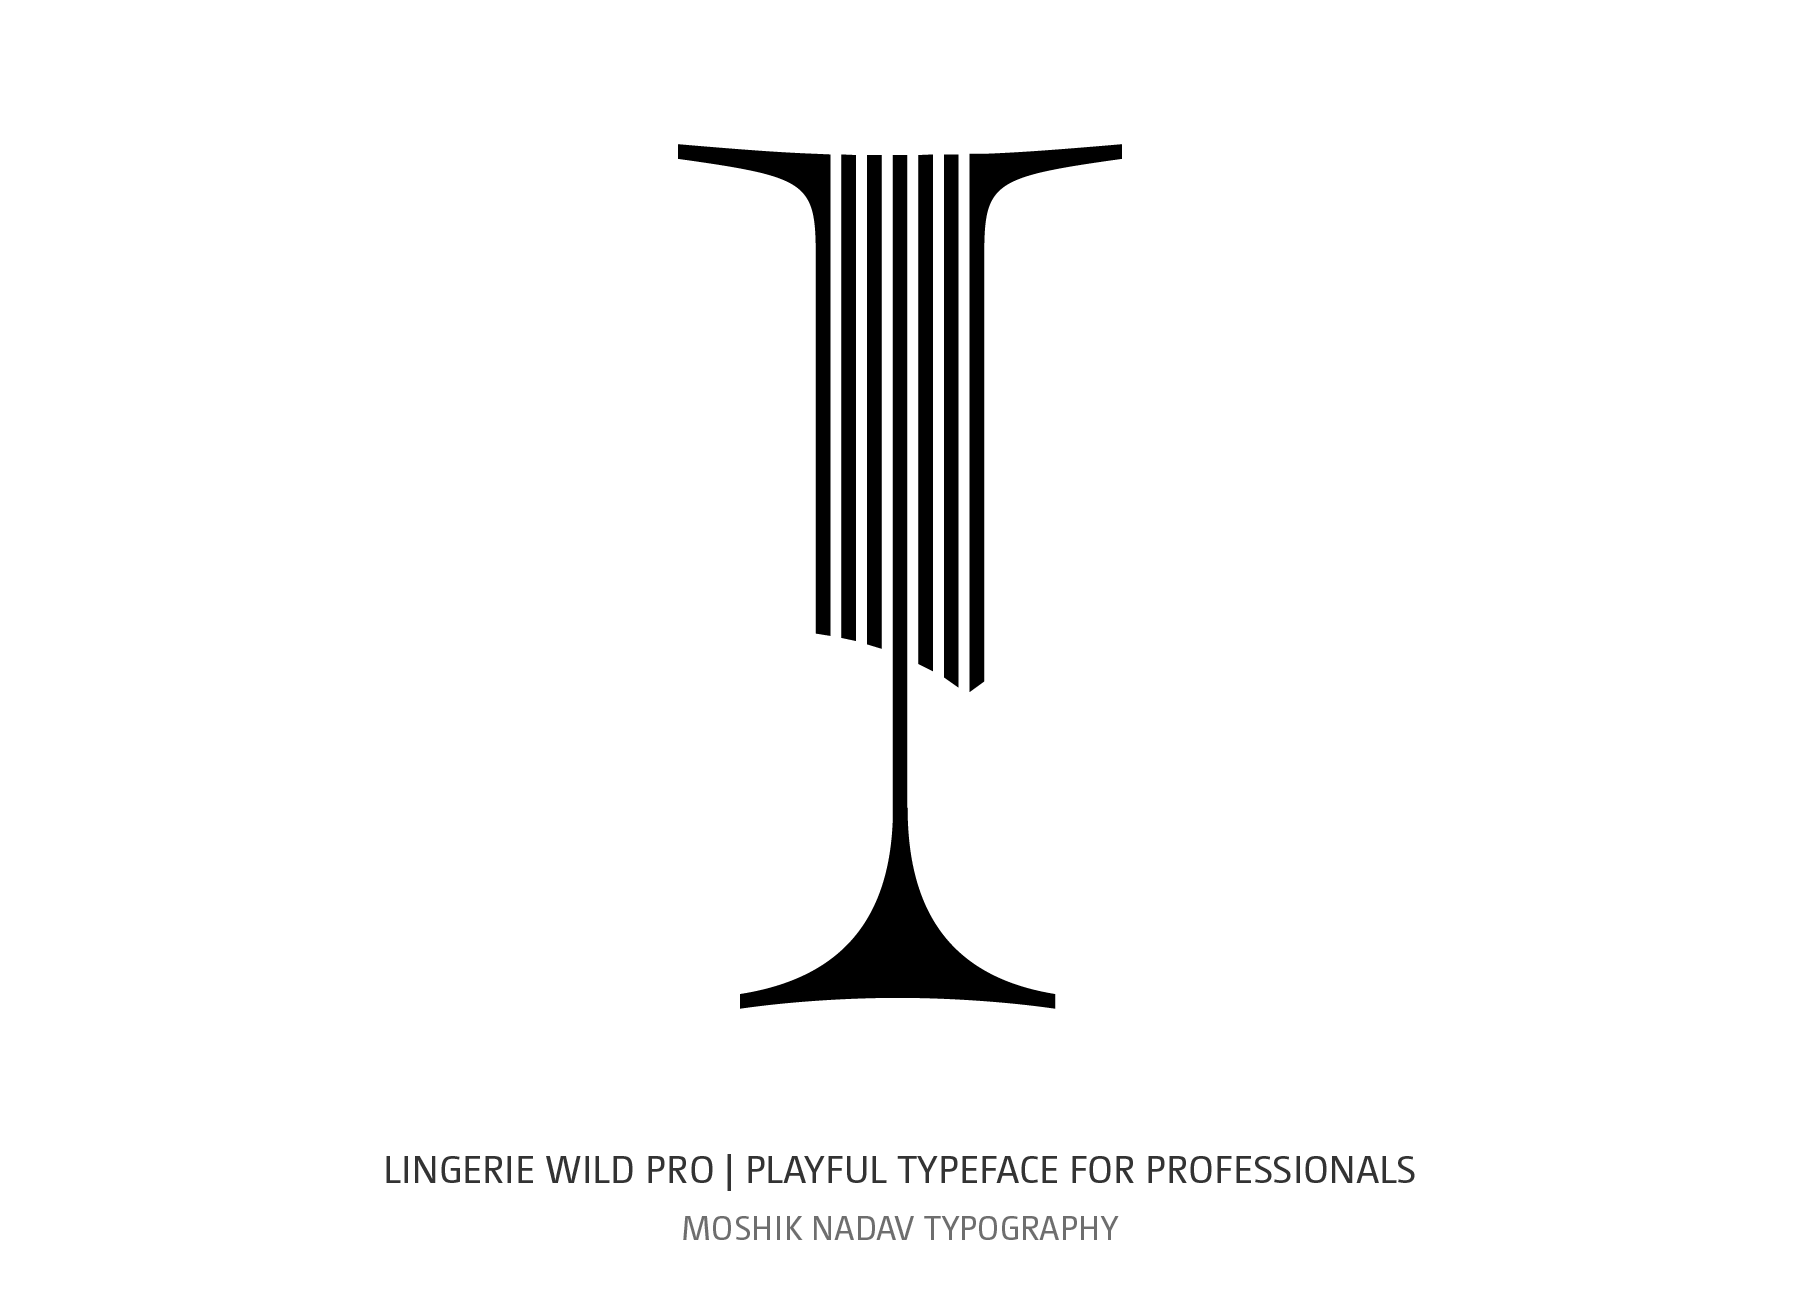 Lingerie Wild Pro uppercase I designed for fashion magazines and logo design